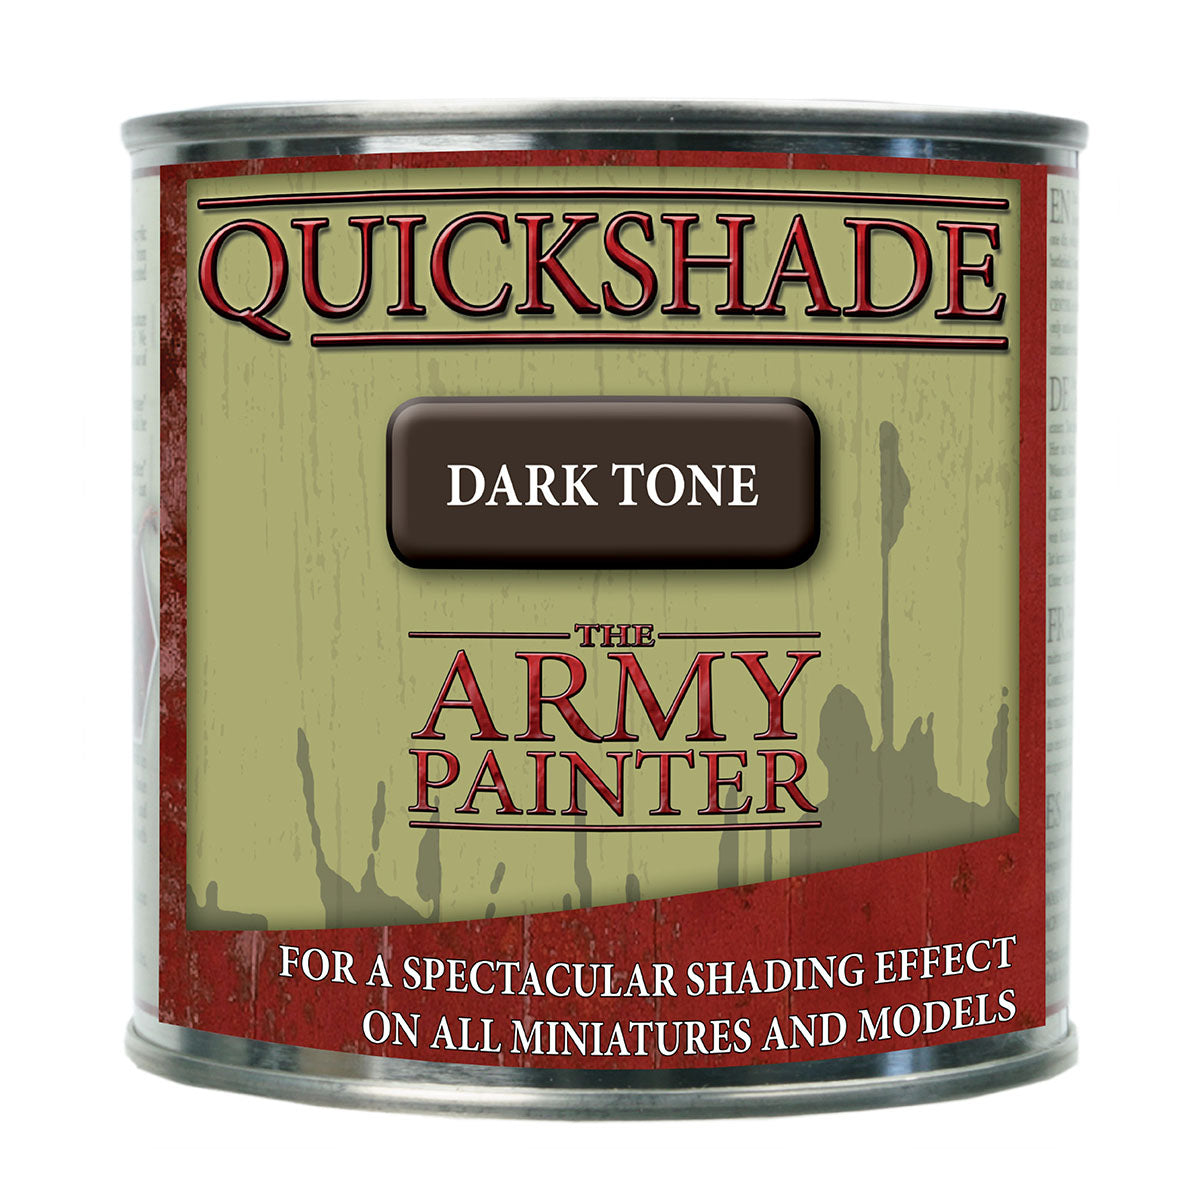 Quickshade Dip: Dark Tone